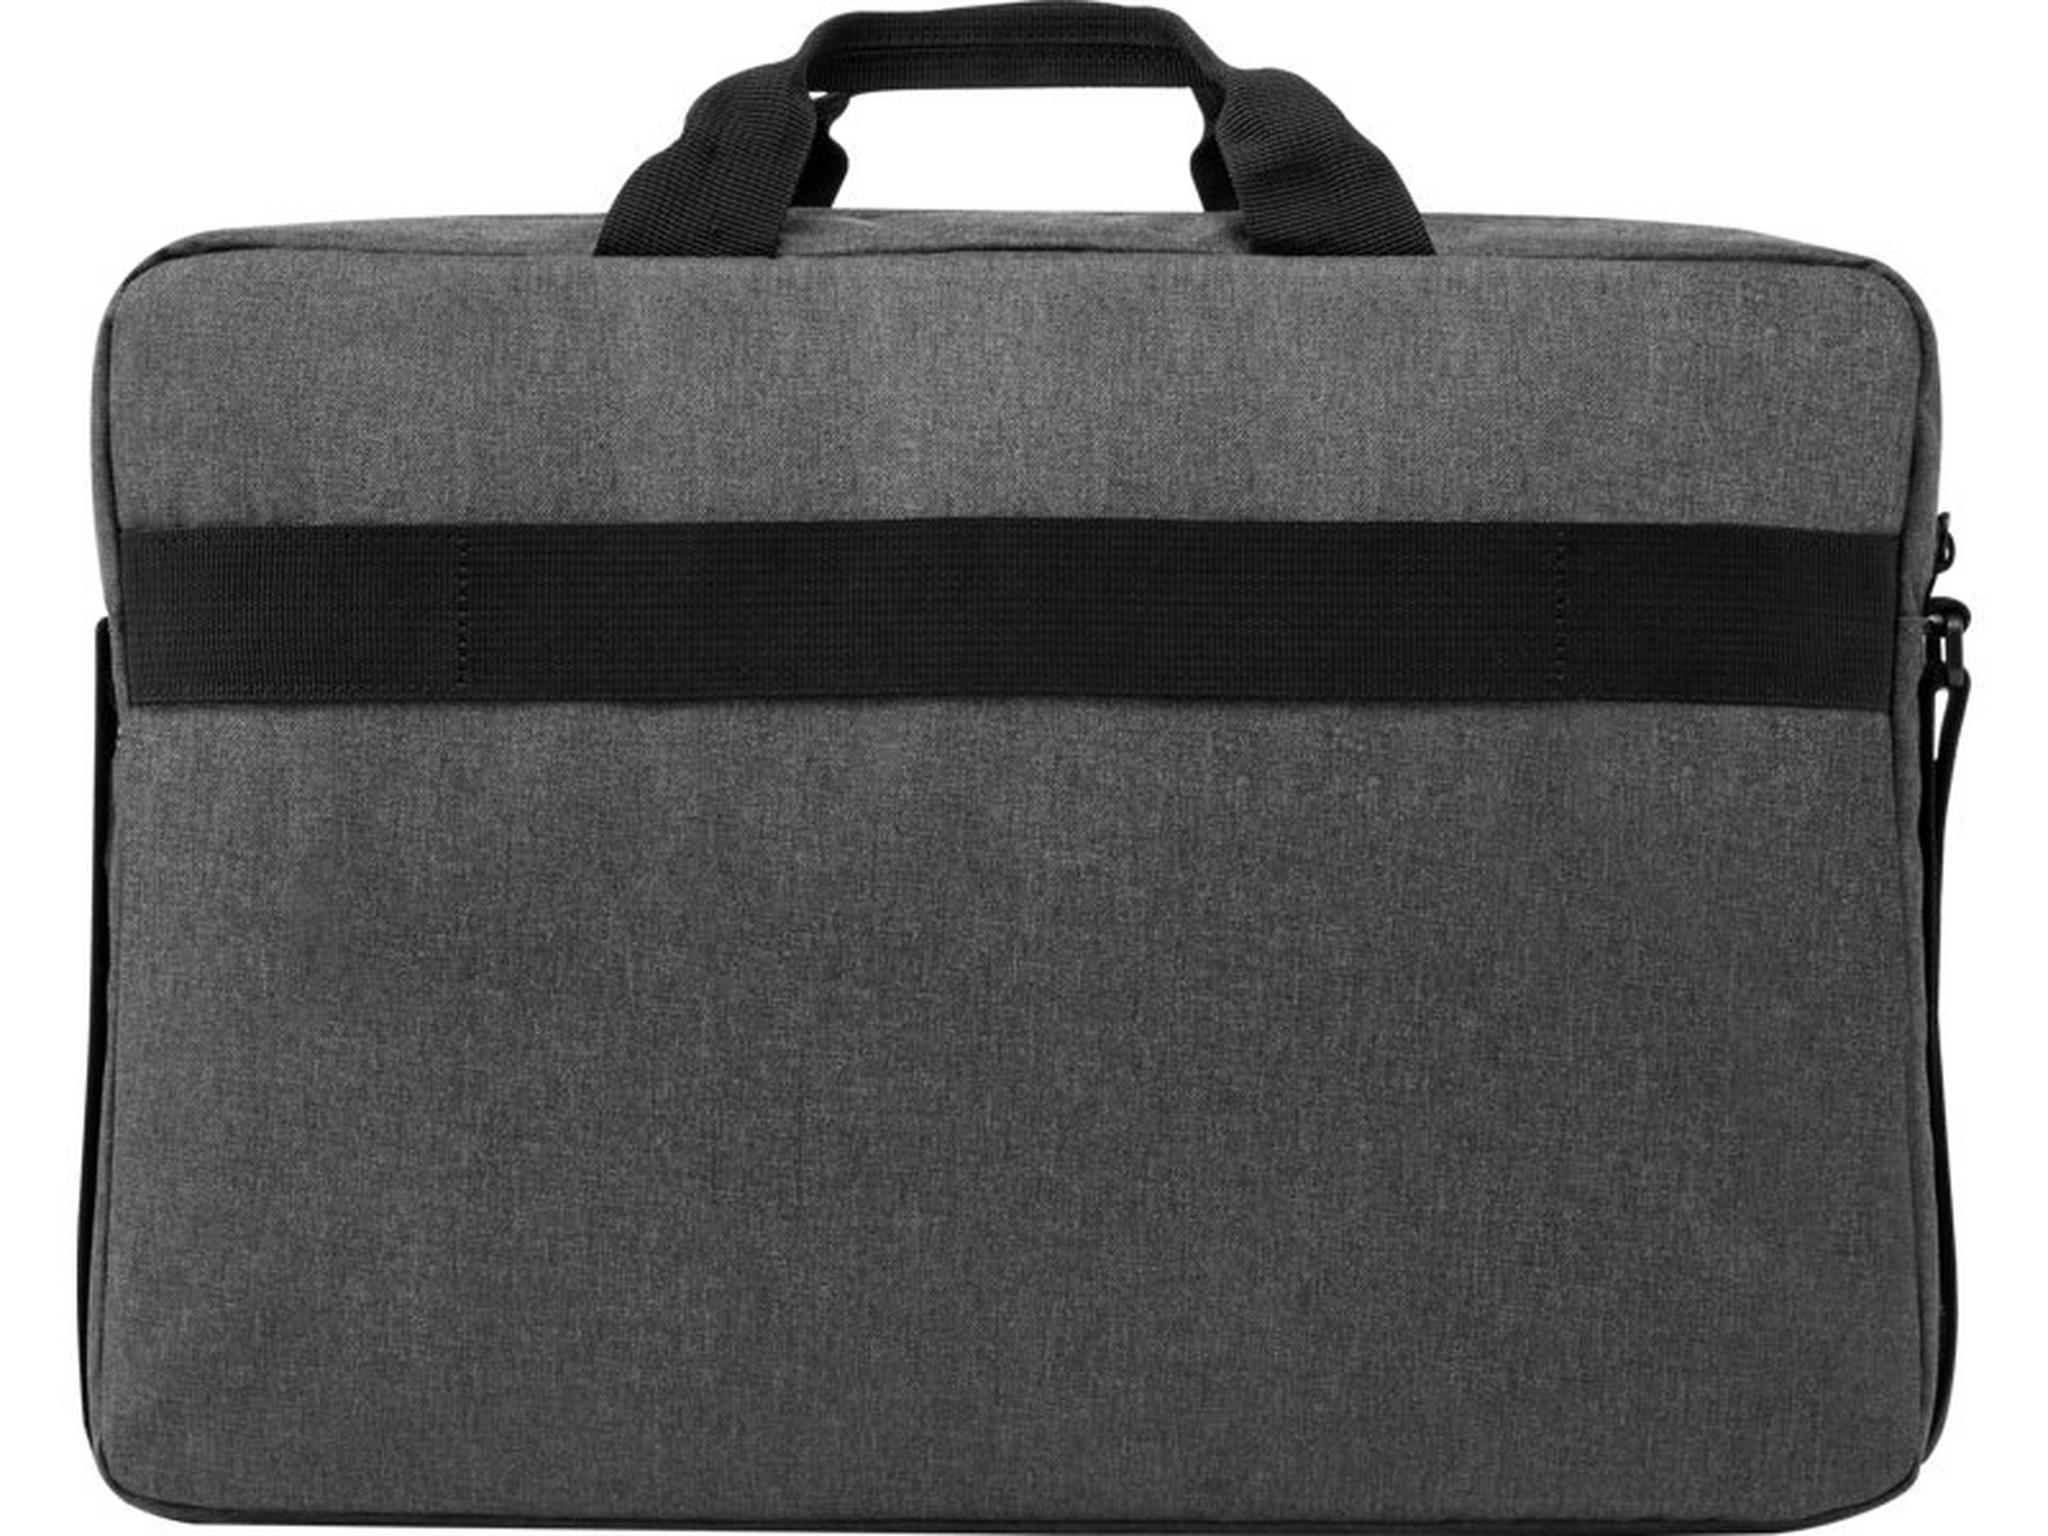 حقيبة إتش بي بريلود للابتوب بحجم 17  بوصة - رمادي